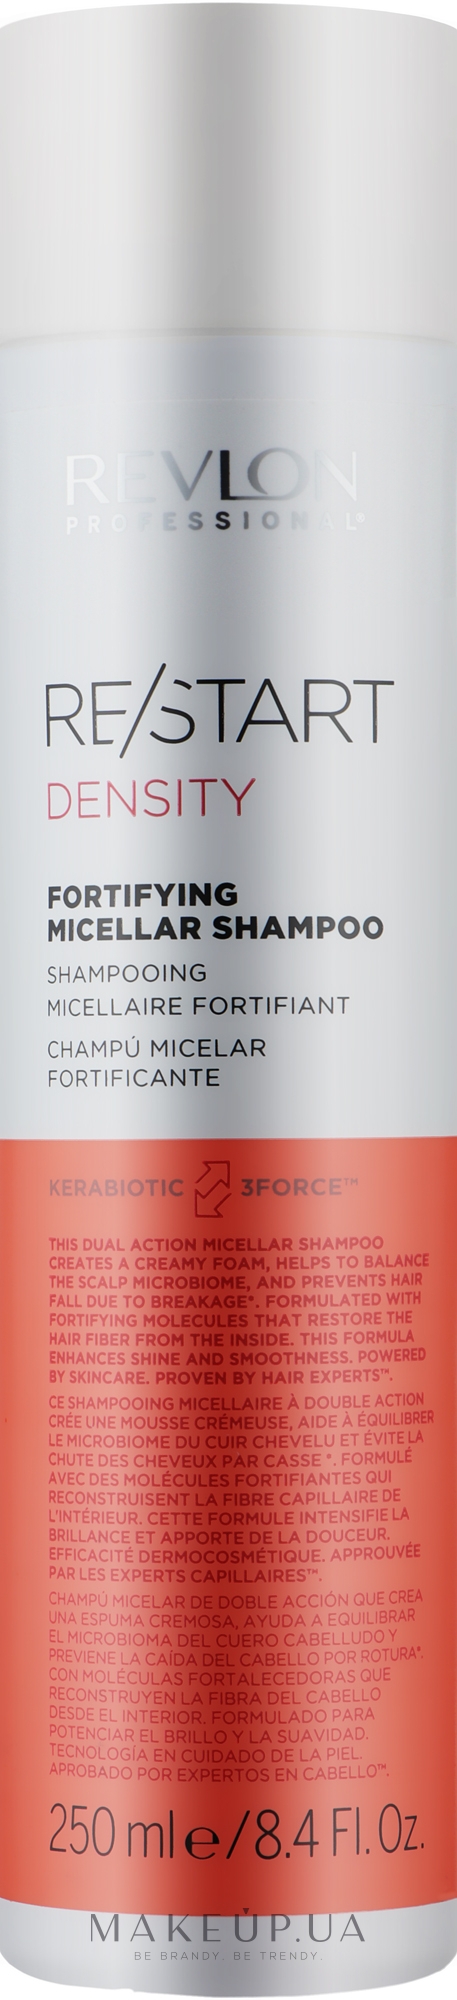 Зміцнювальний міцелярний шампунь - Revlon Professional Restart Density Fortifying Micellar Shampoo — фото 250ml